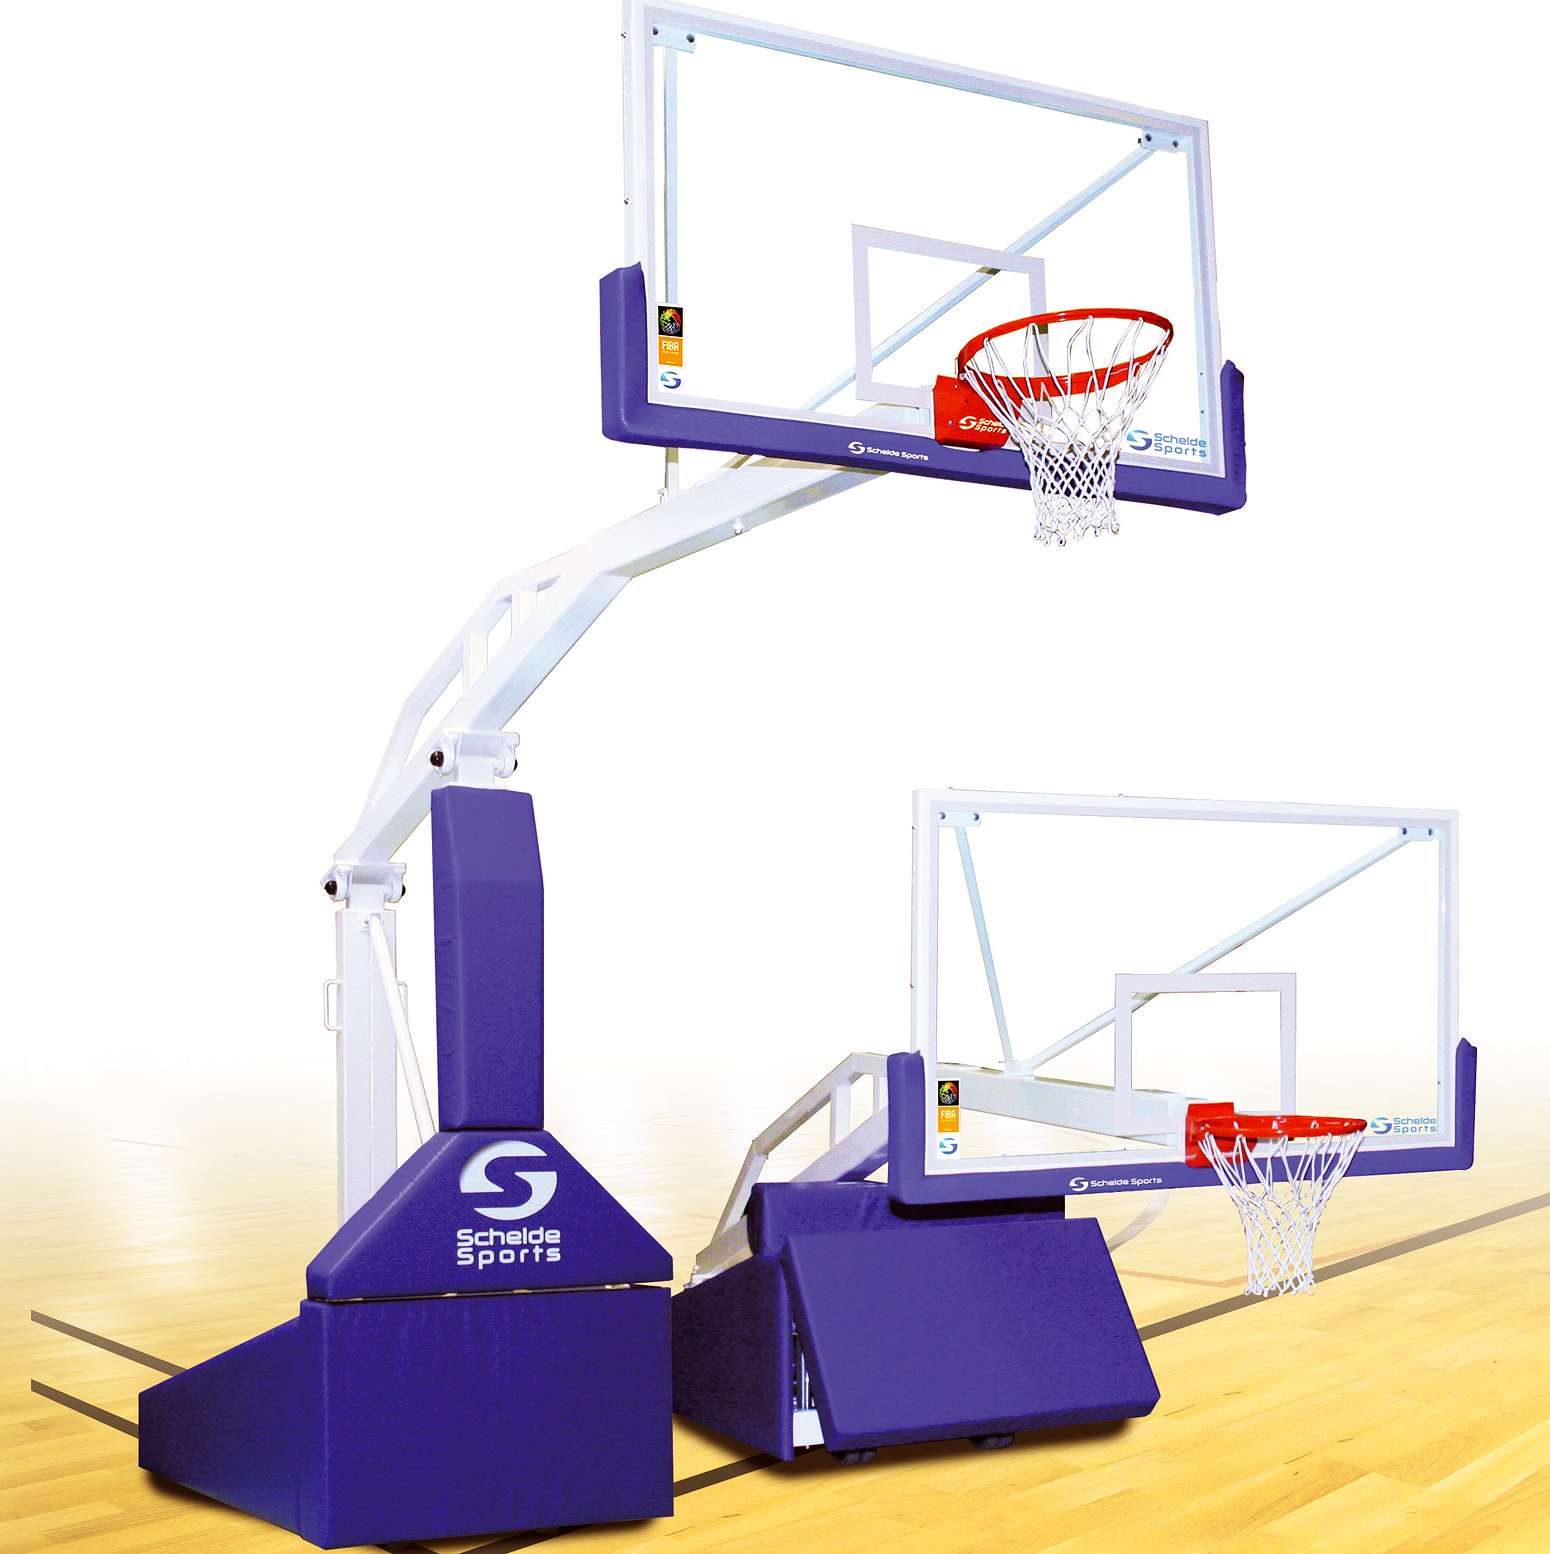 Schelde Basketballanlage "Super SAM 245" von Schelde